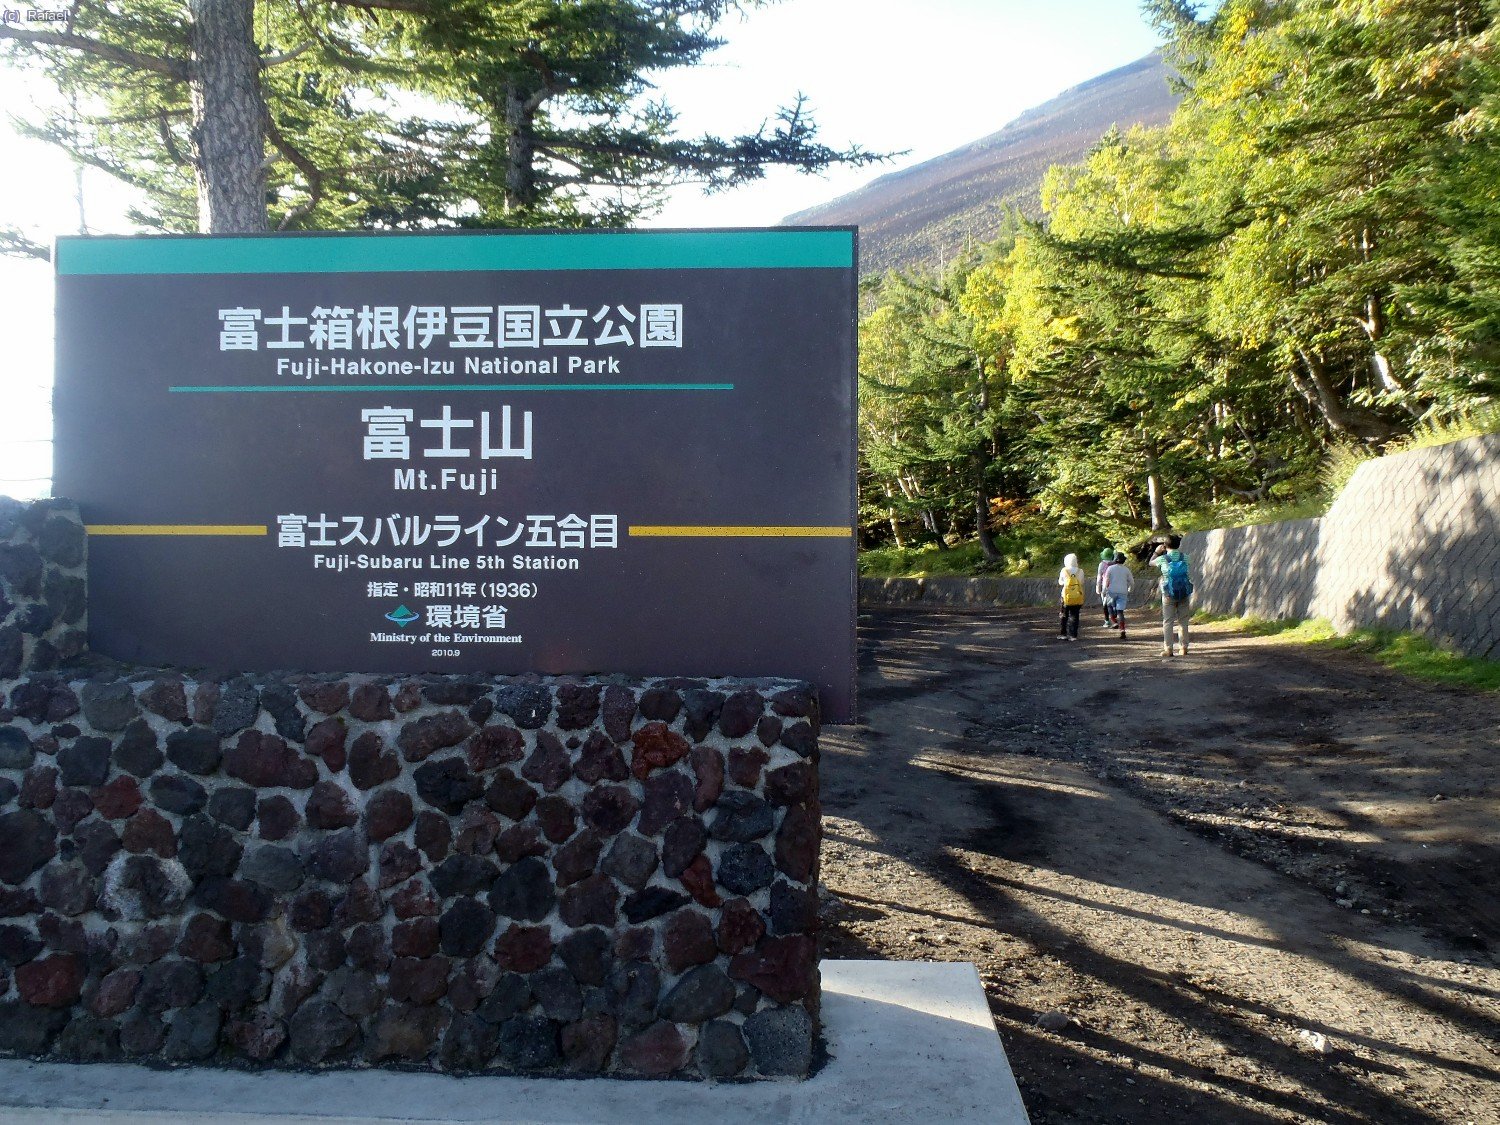 Inicio de la ruta Fuji - Yoshida 
Nos esperan 1400 mts de desnivel.
